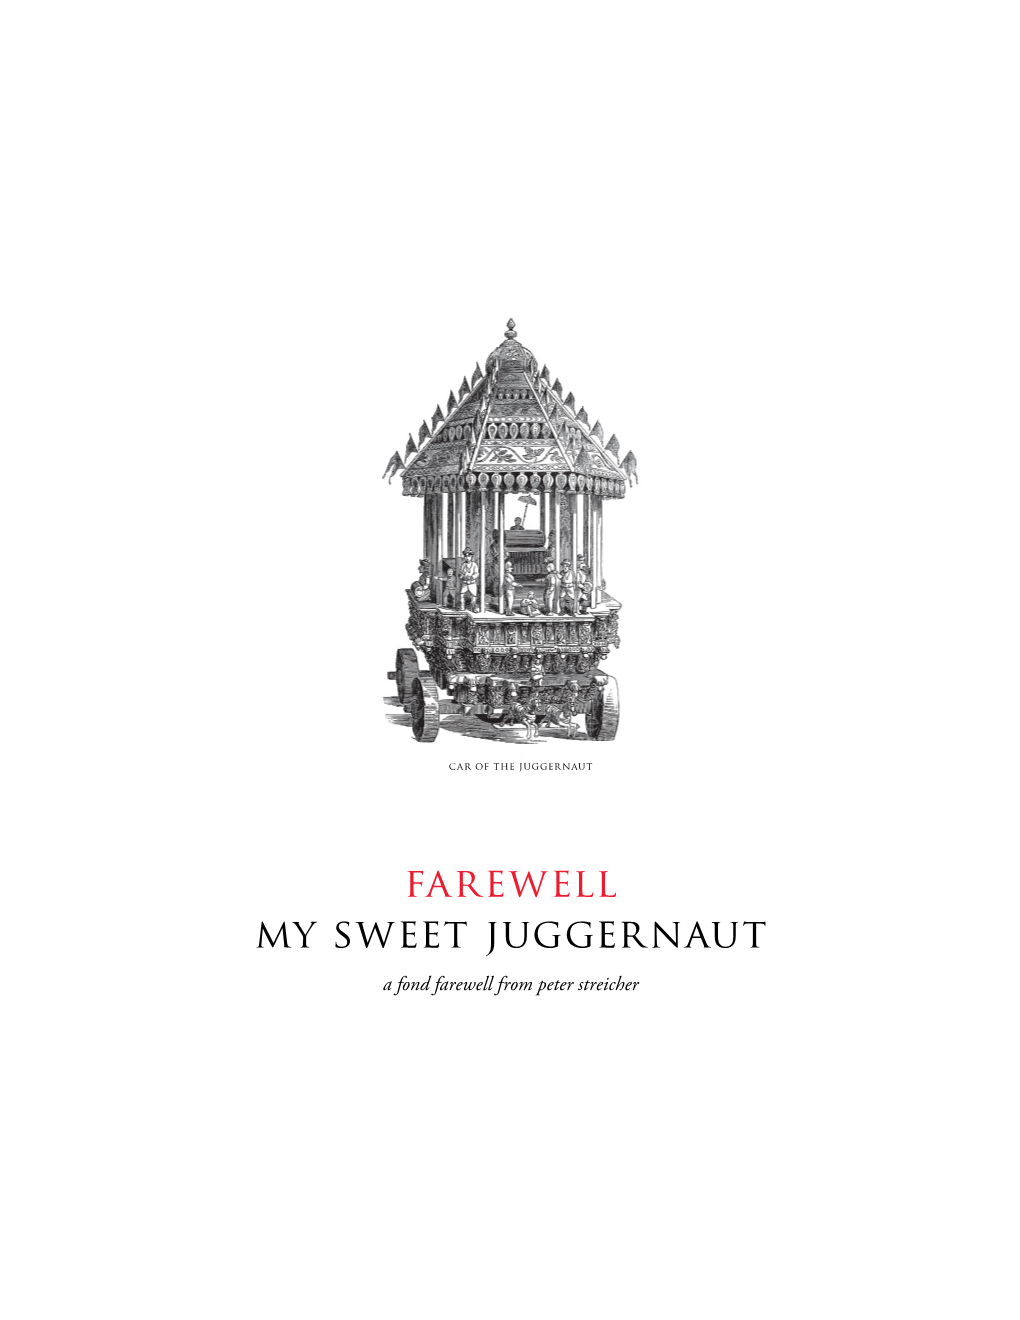 Farewell My Sweet Juggernaut a Fond Farewell from Peter Streicher Preface: a Brief History